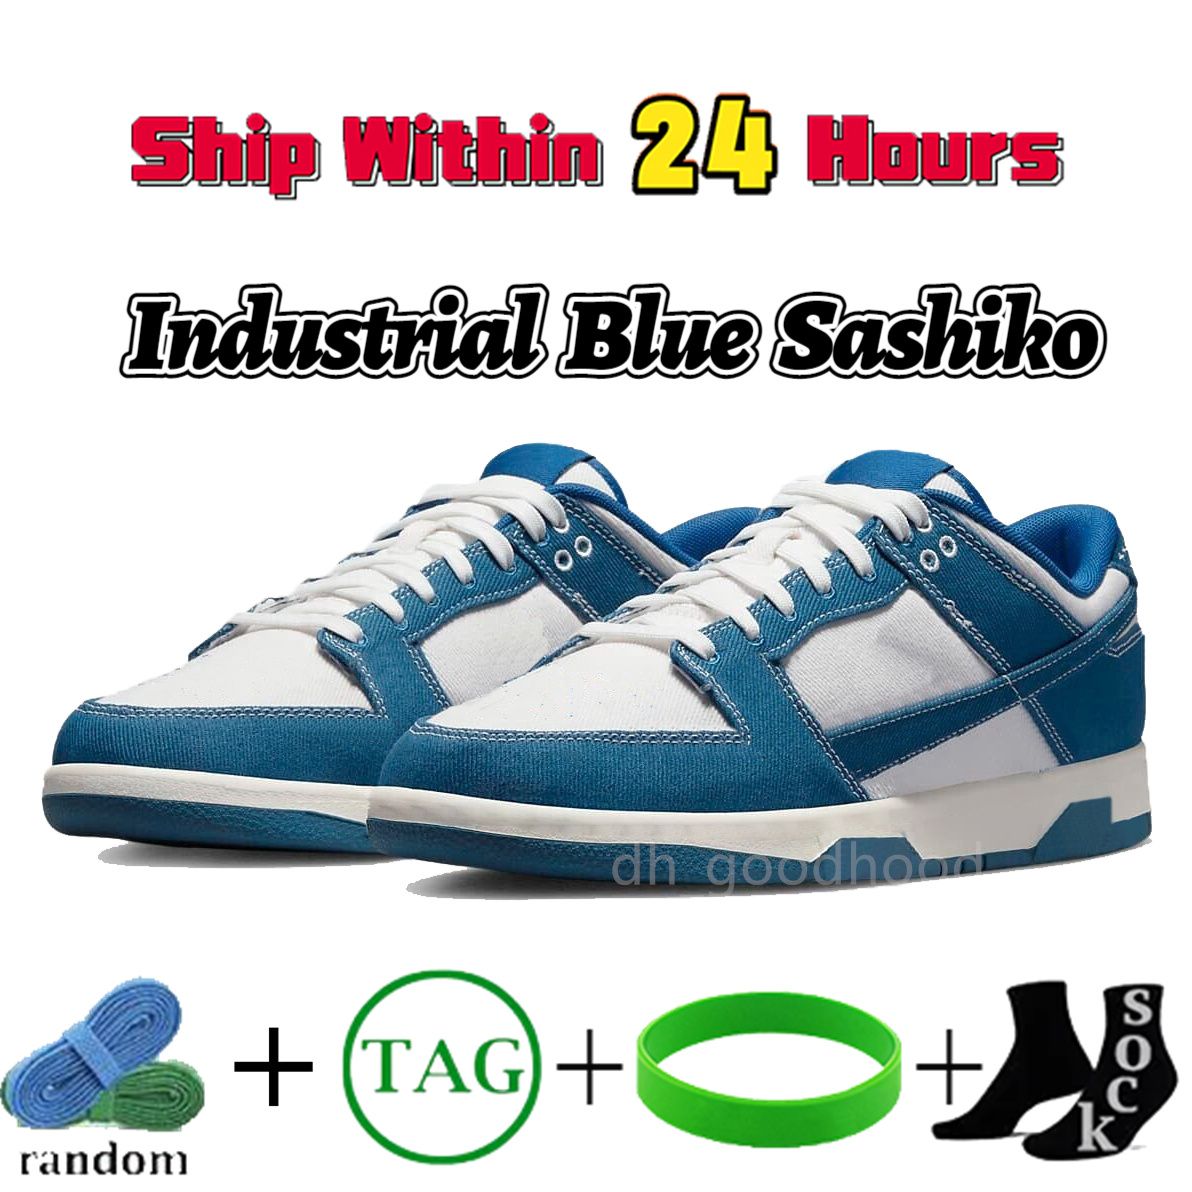 21 industriële blauwe sashiko